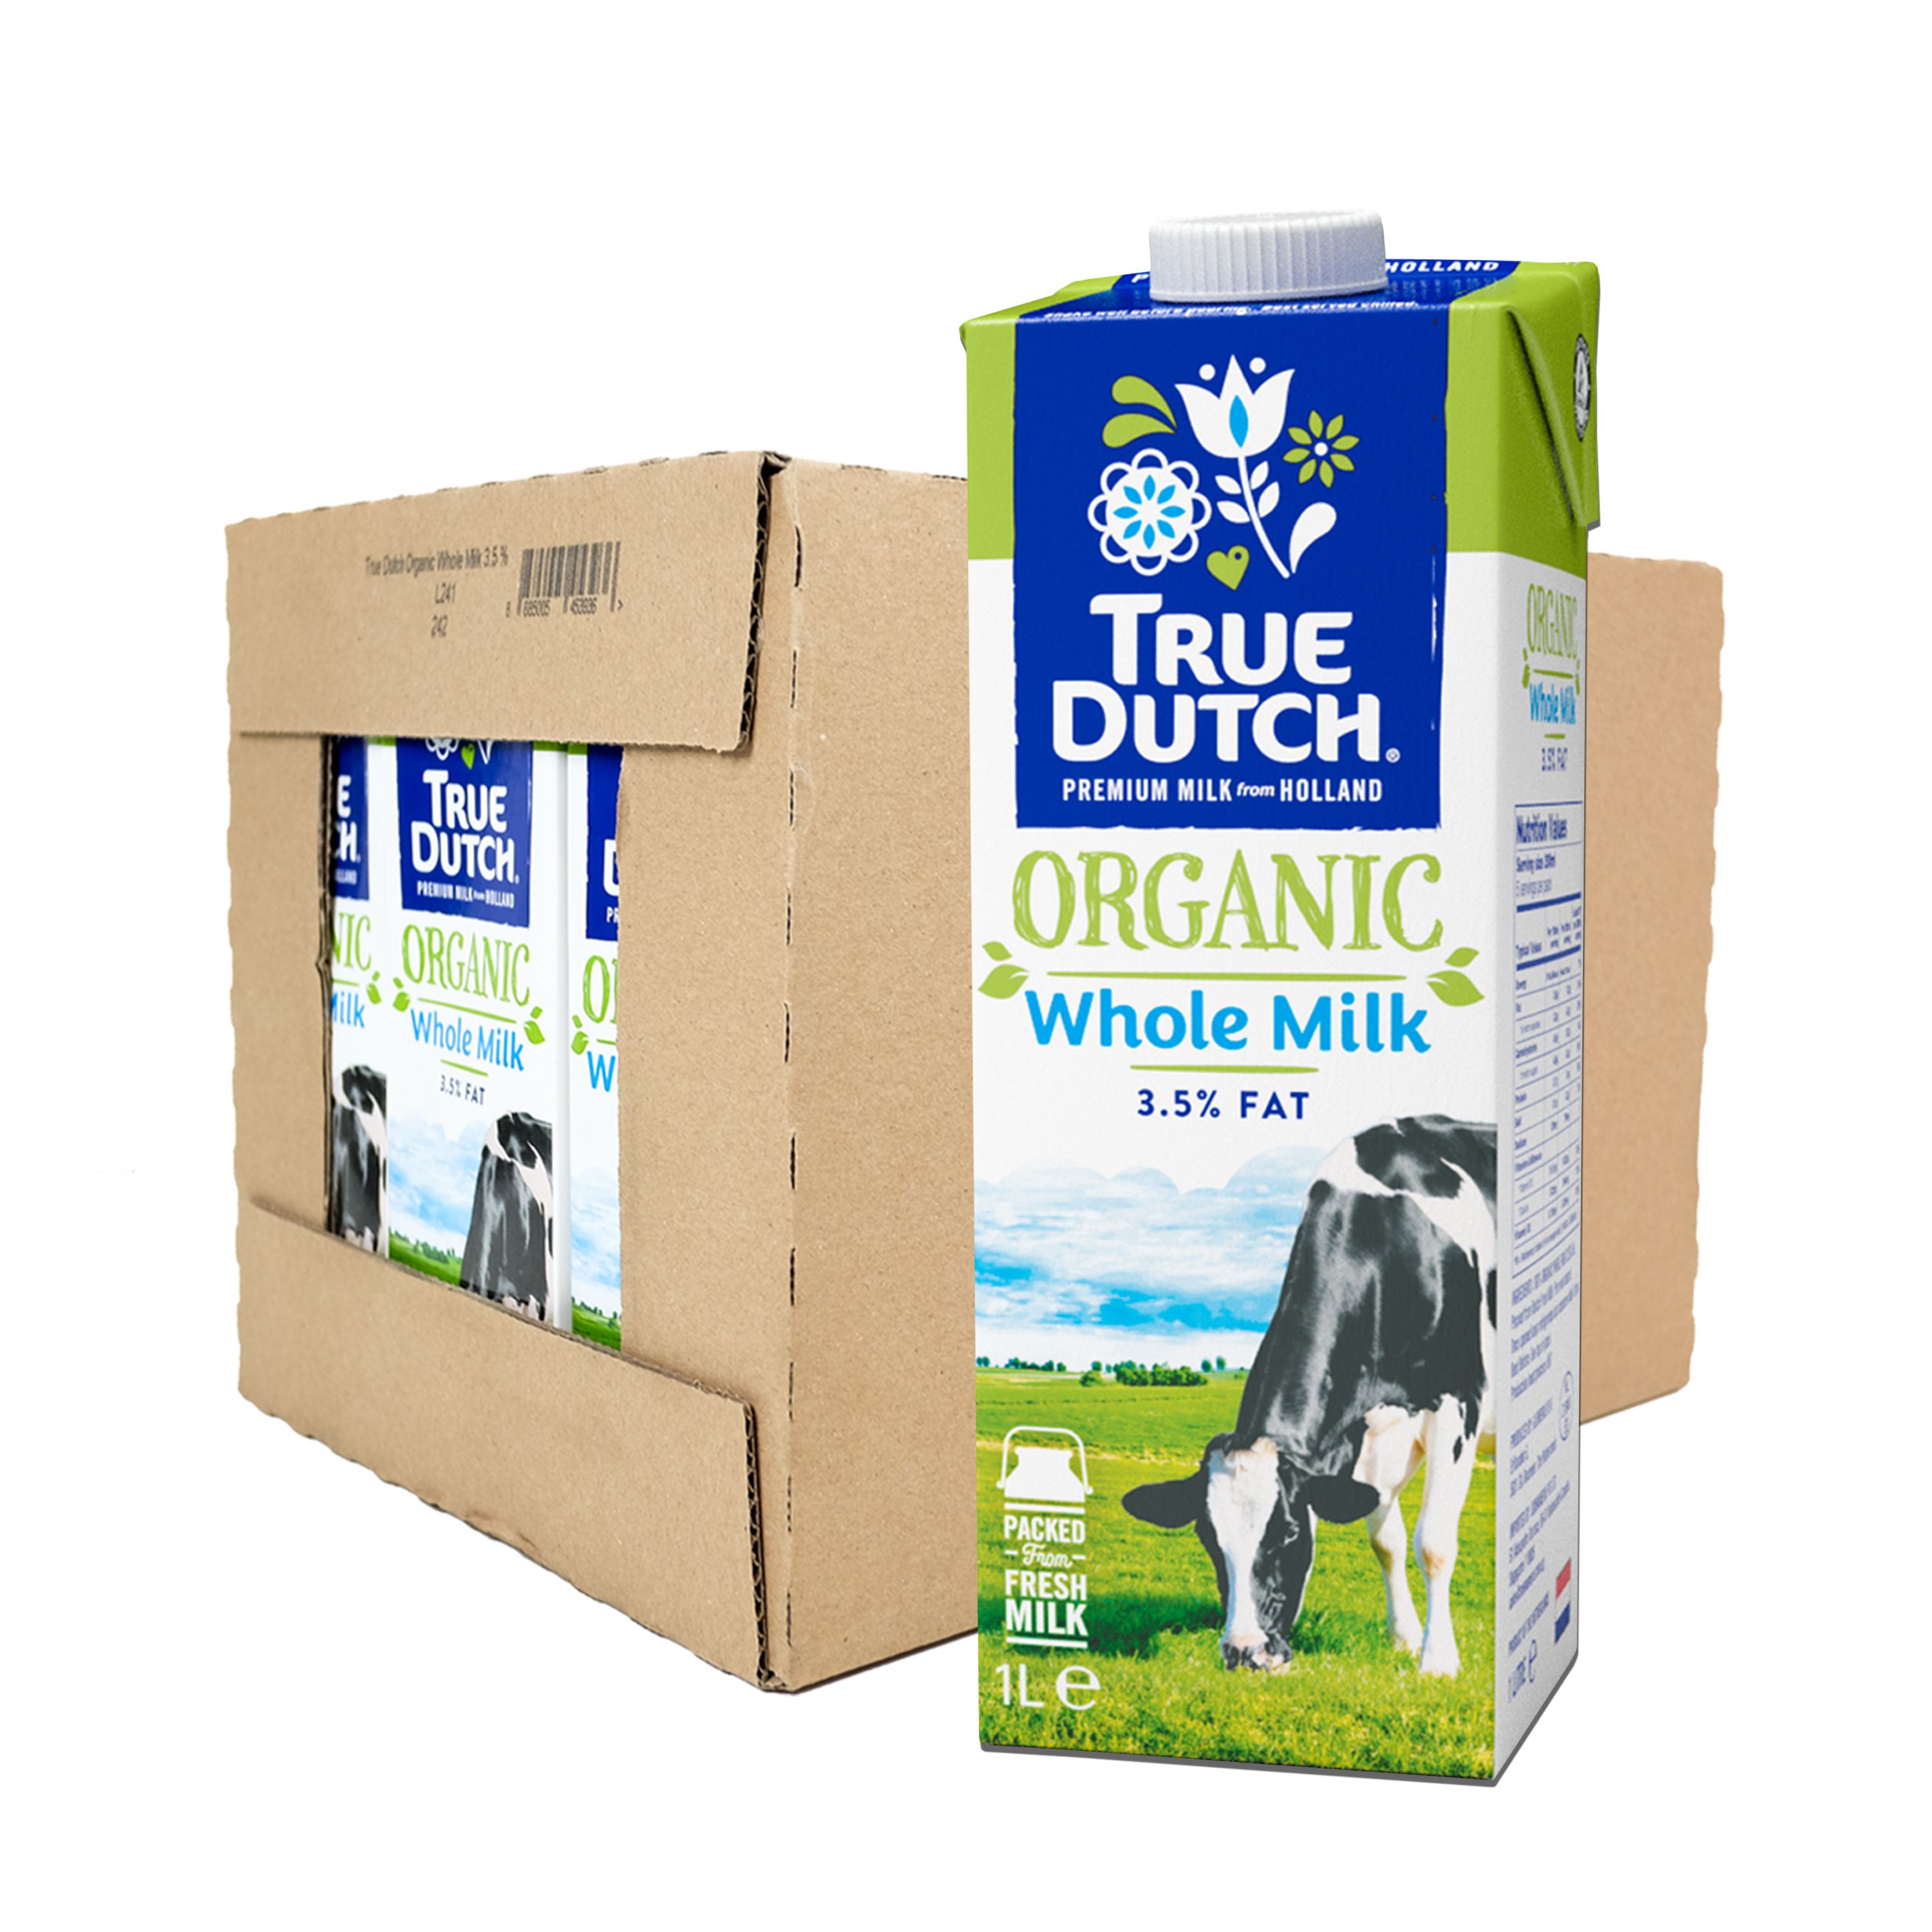 TRUE DUTCH Organic Whole Milk CASE 1Lx12